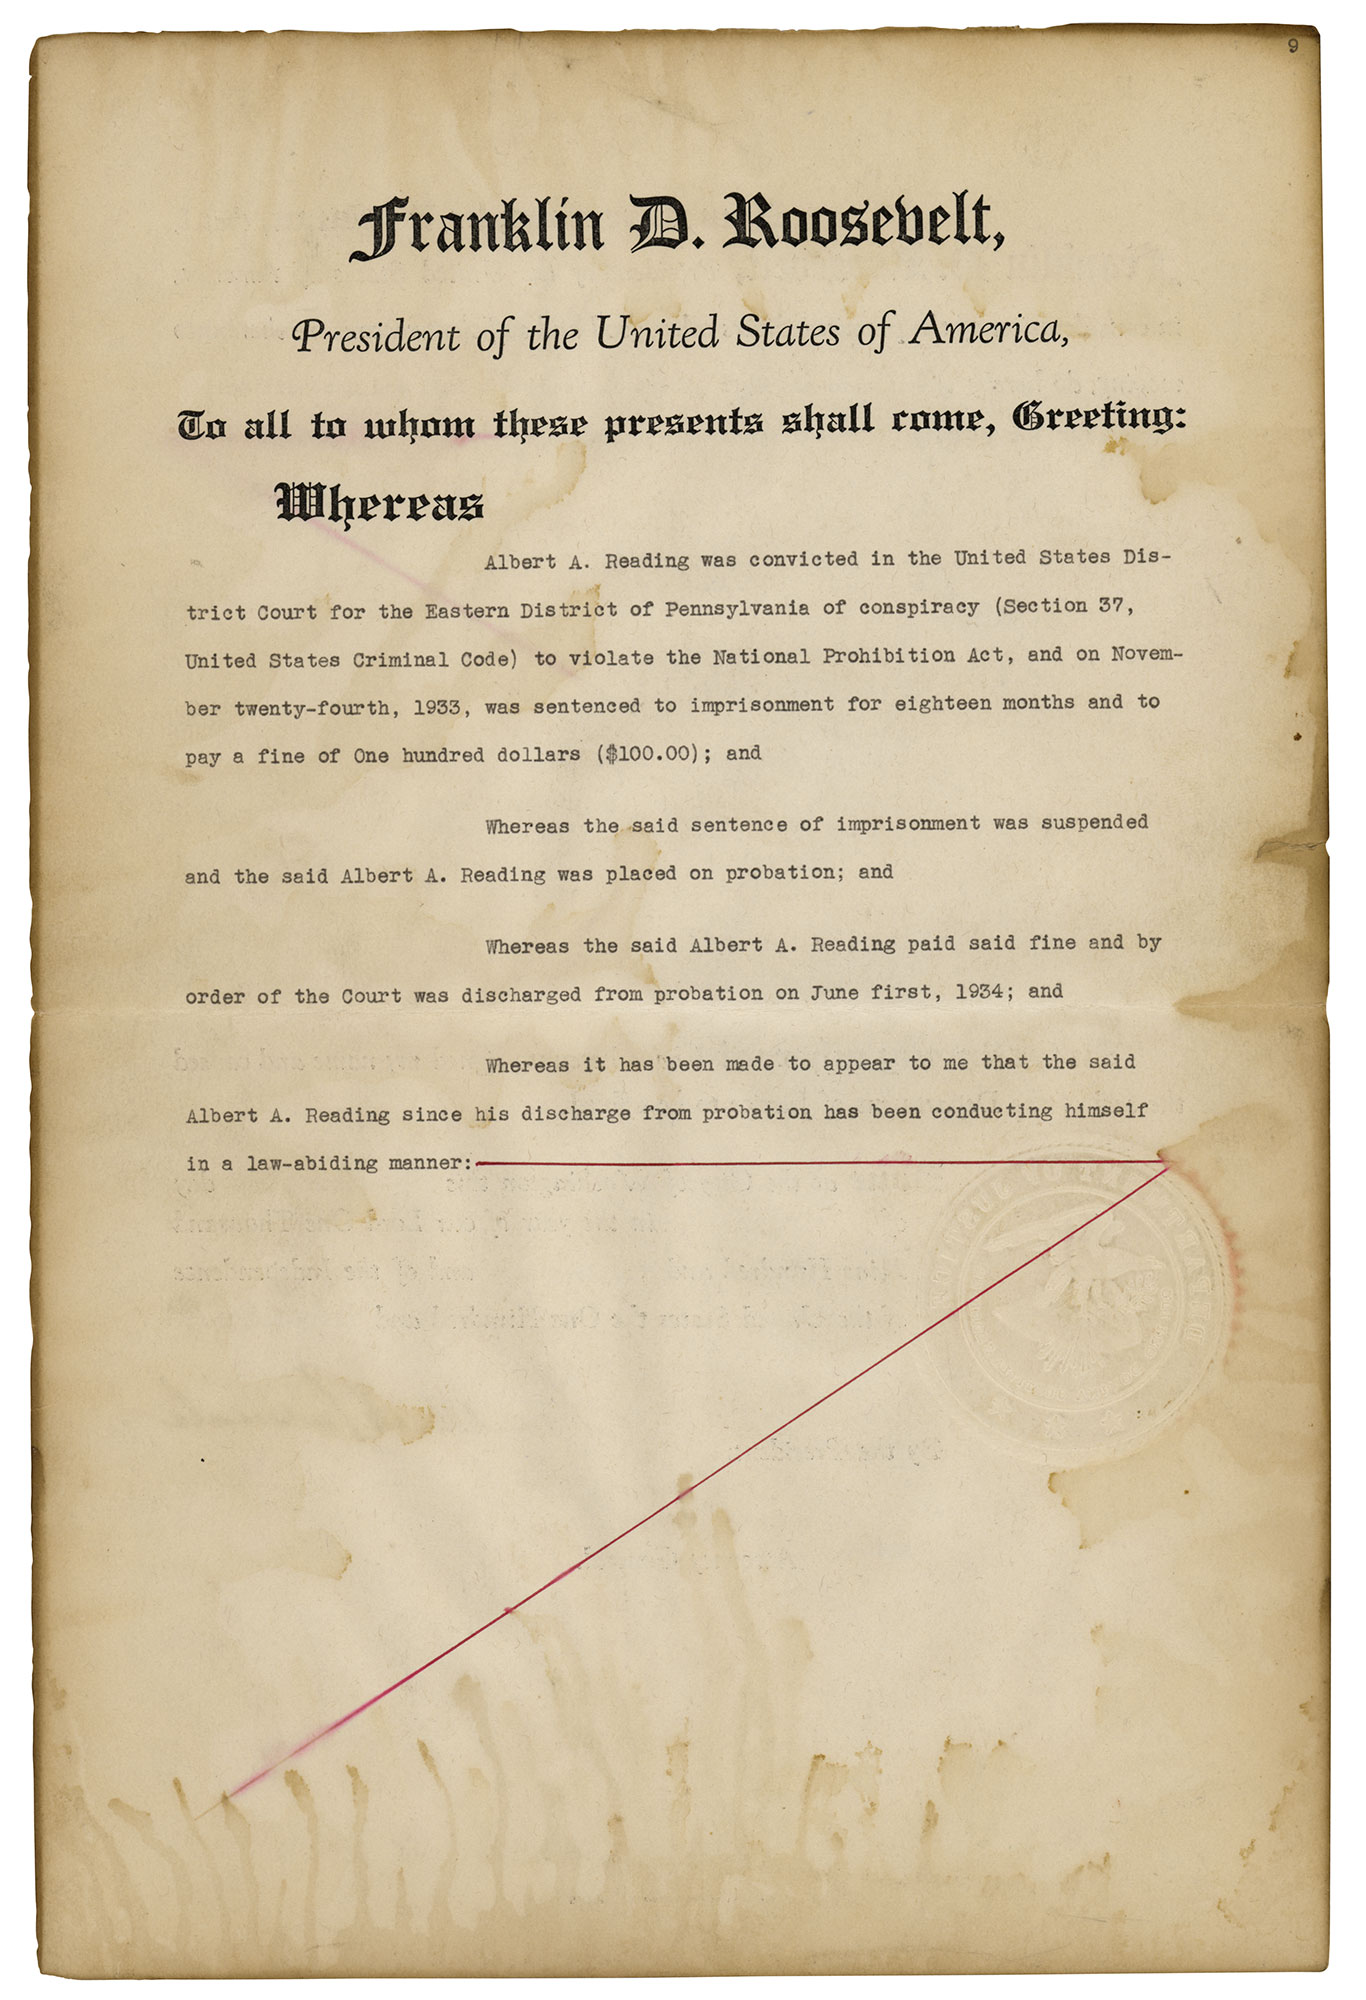 Lot #22 Franklin D. Roosevelt Document Signed as President - Image 2